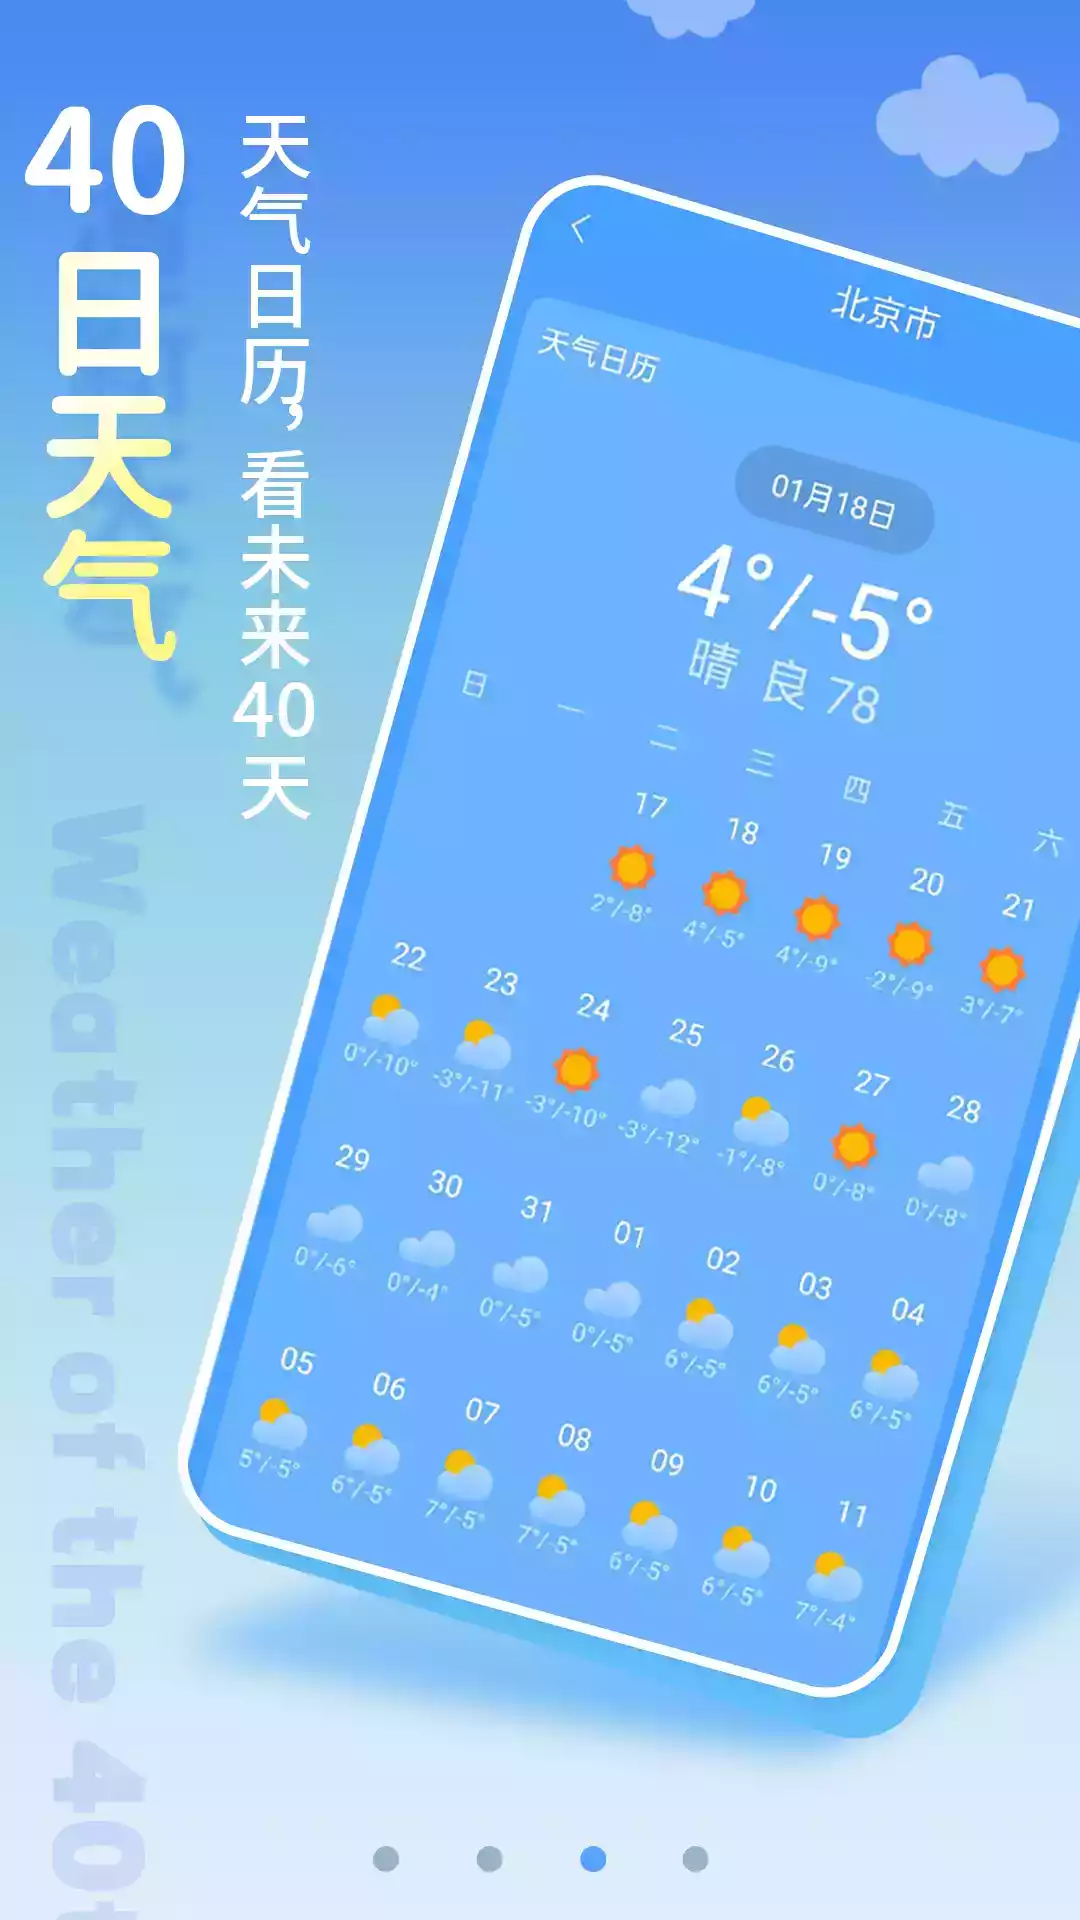 广东清新天气预报